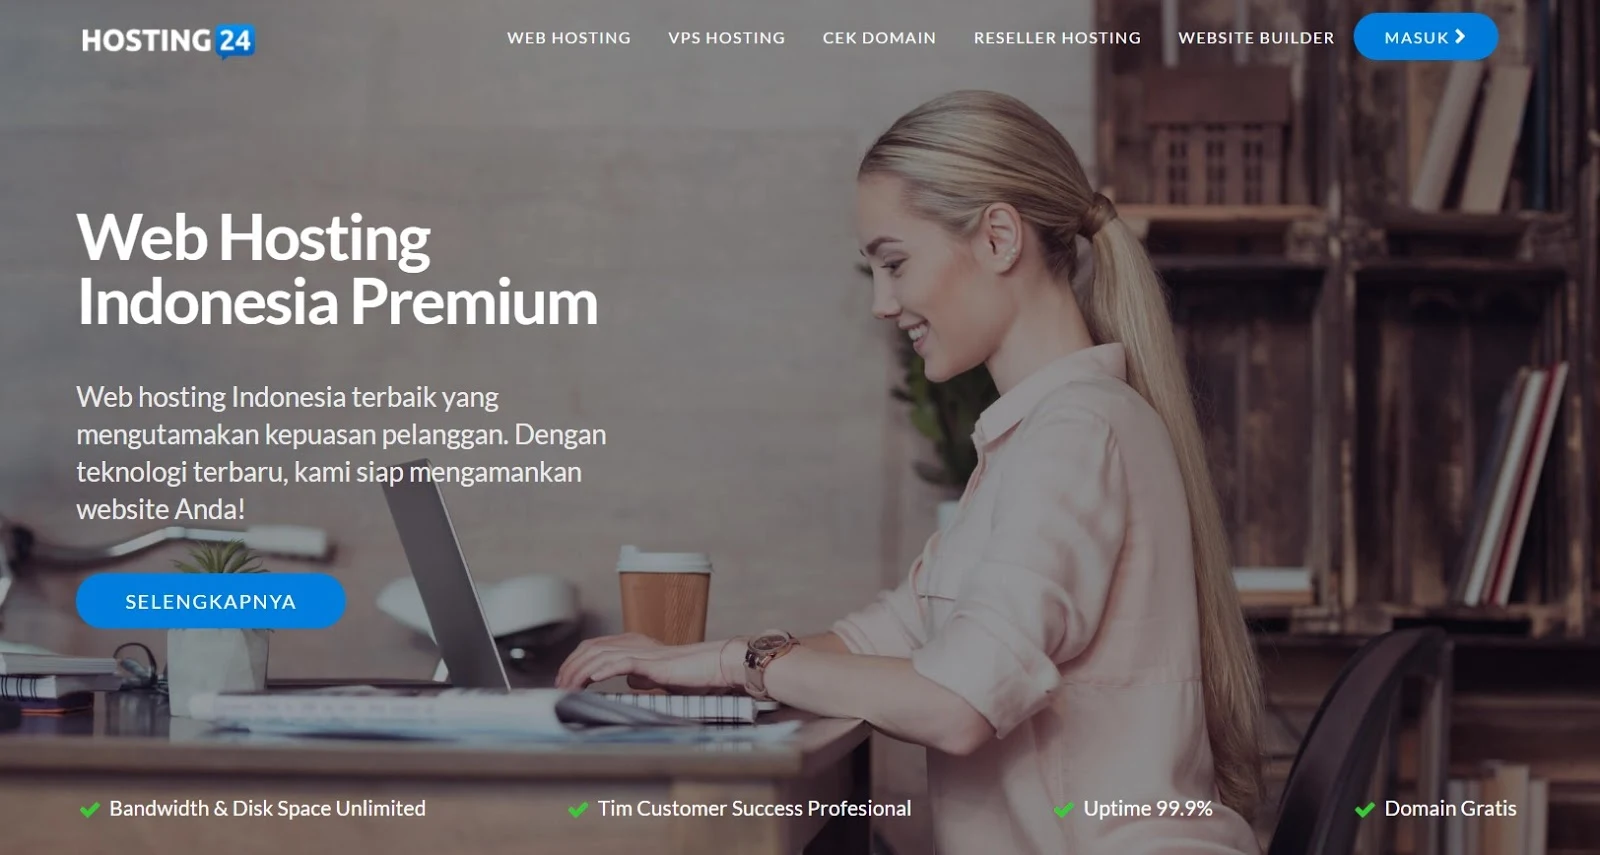 Hosting24 Layanan Web Hosting Indonesia Yang Menyediakan Hosting Premium